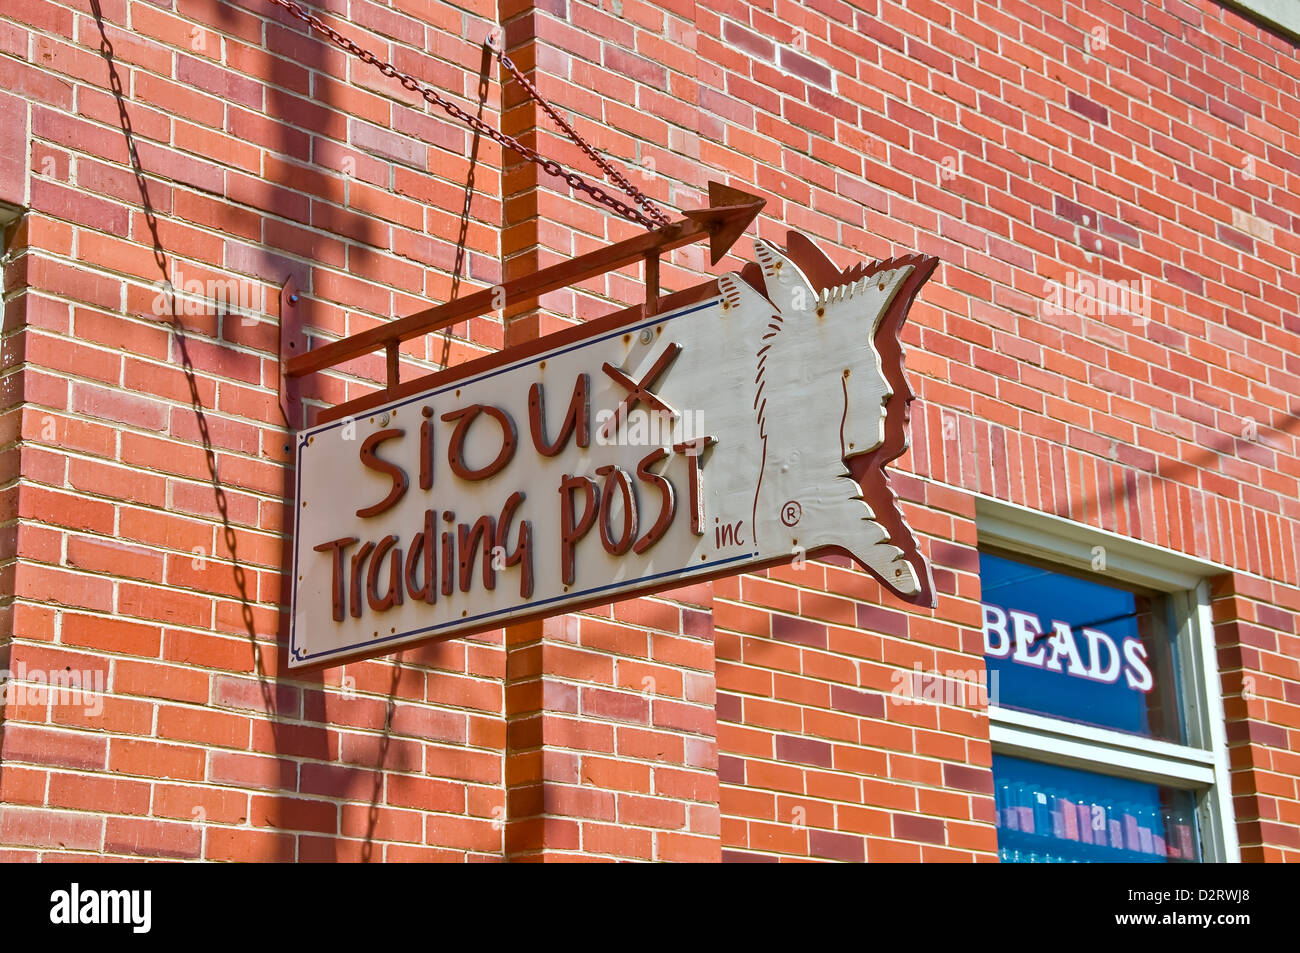 Sioux Trading Post segno sulla parte esterna del mattone di edificio di souvenir in Rapid City Foto Stock